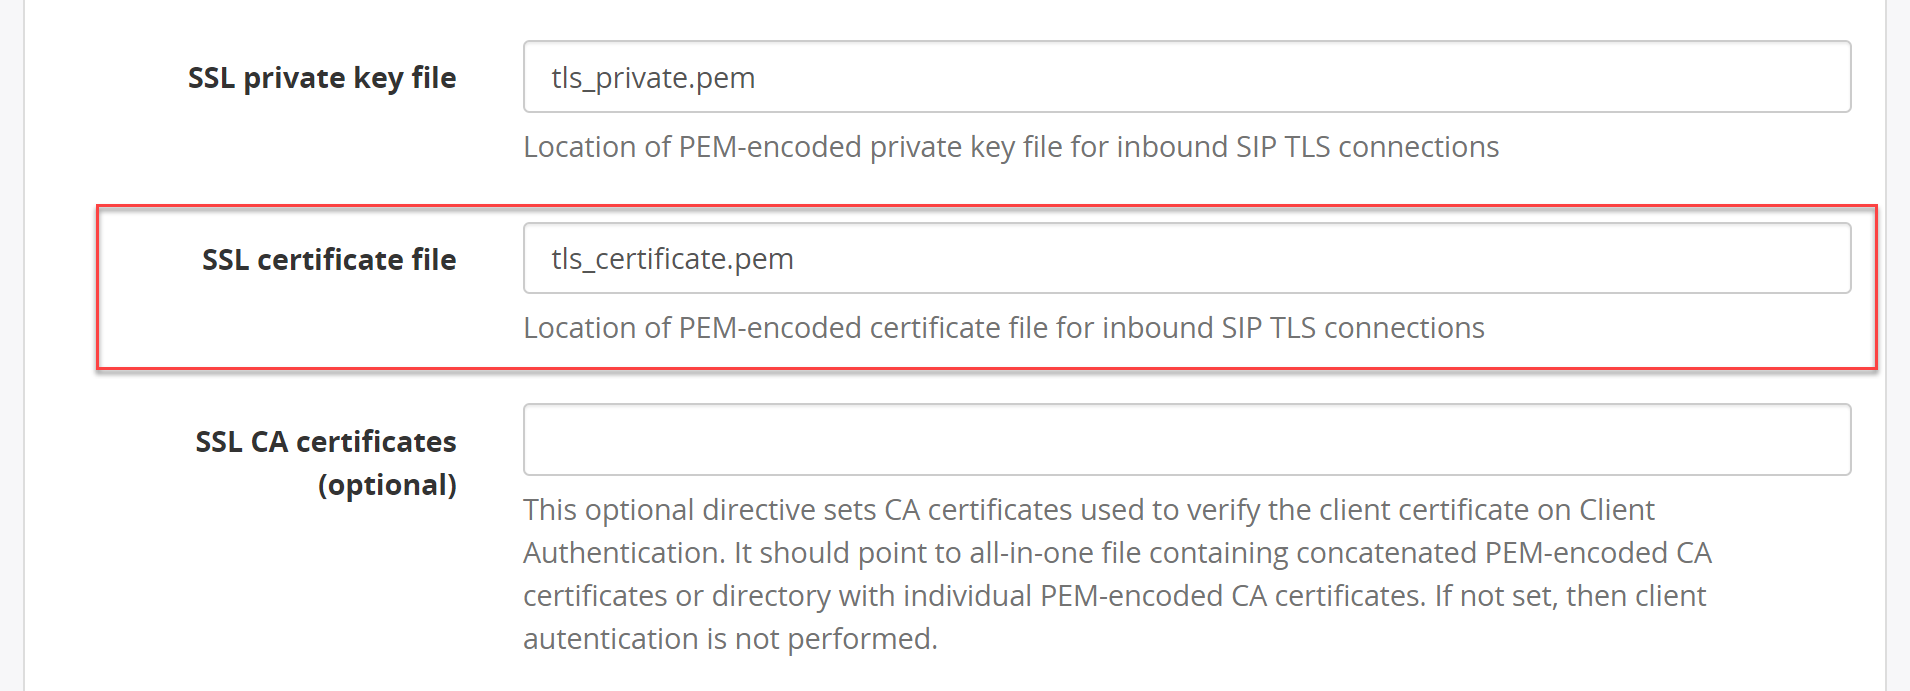 SSL certificate file